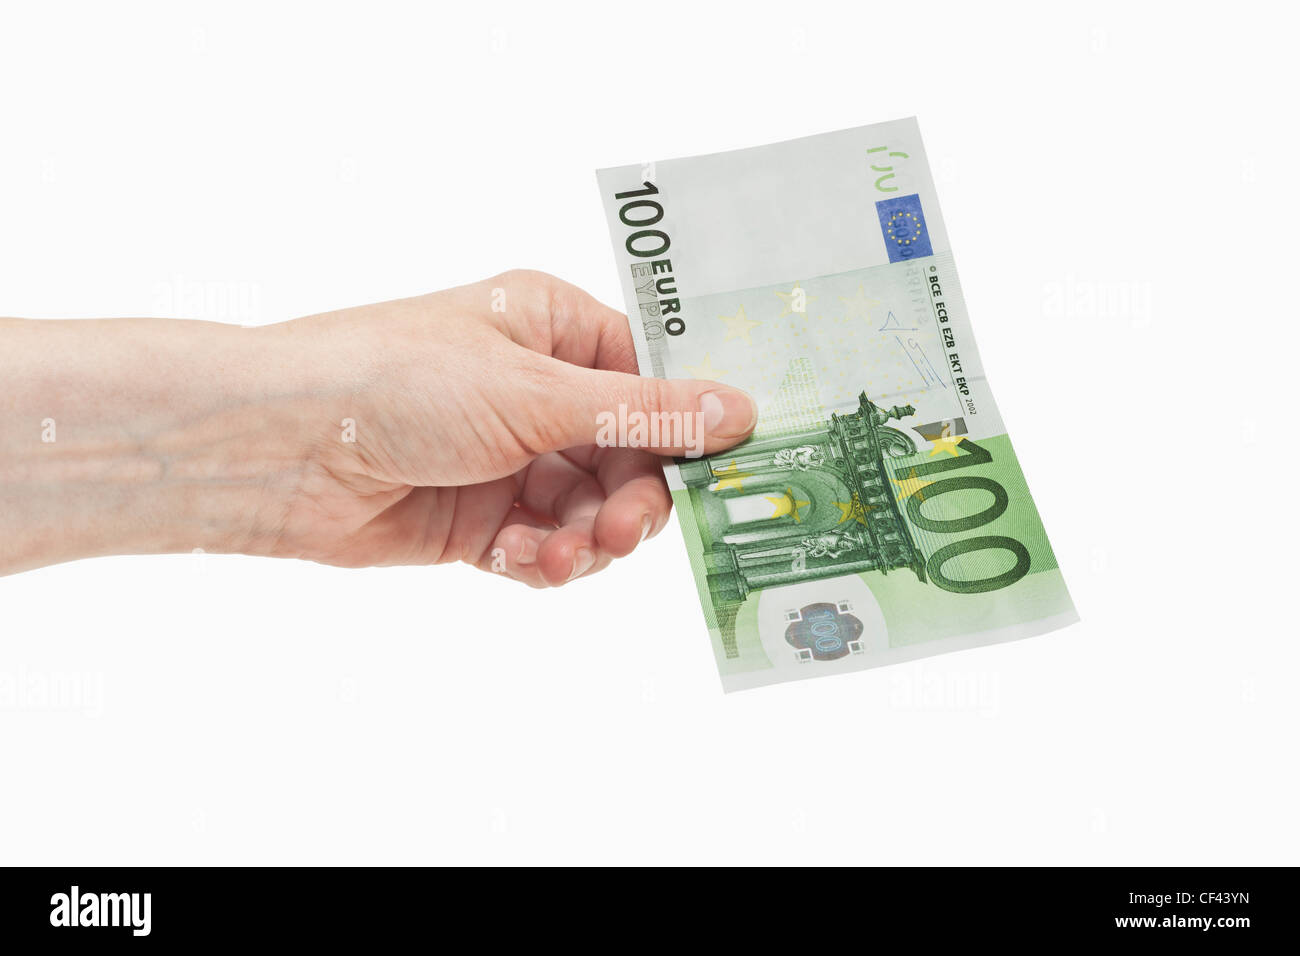 Un Euro 100 bill è tenuto in mano. Il 01 gennaio 2002 l'Euro è stato introdotto come contante, sfondo bianco. Foto Stock